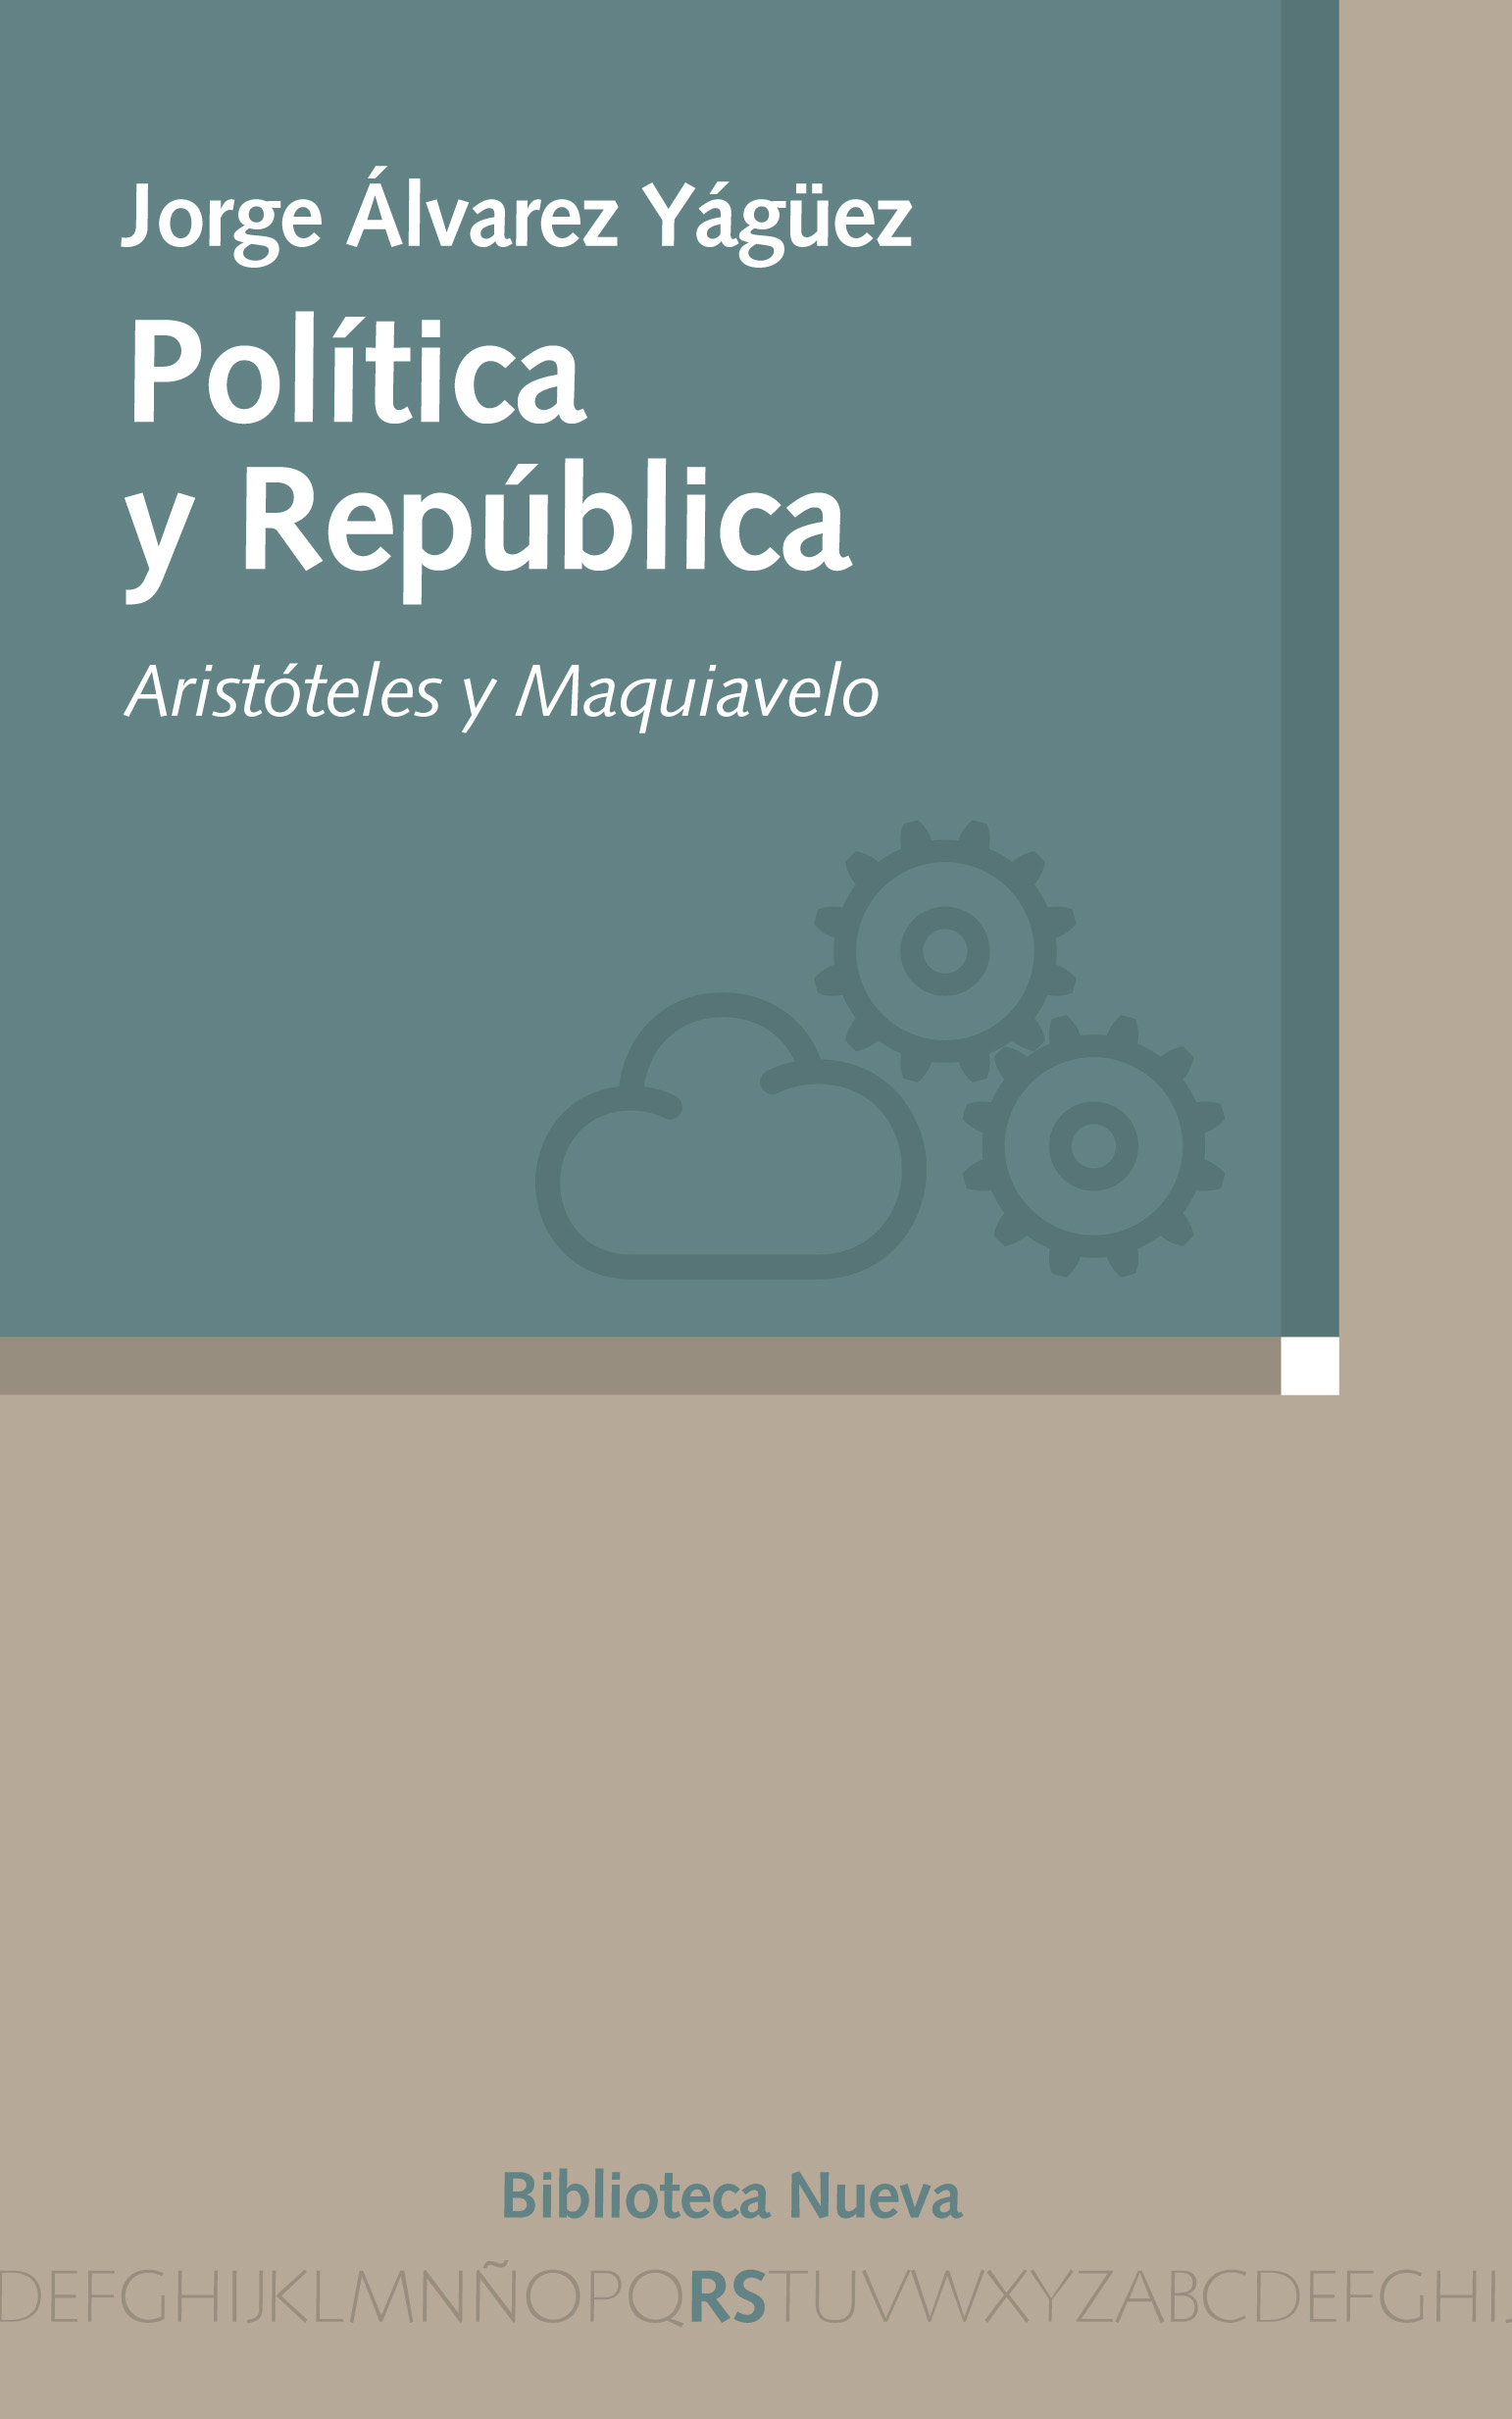 Descargar POLITICA Y REPUBLICA: ARISTOTELES Y MAQUIAVELO